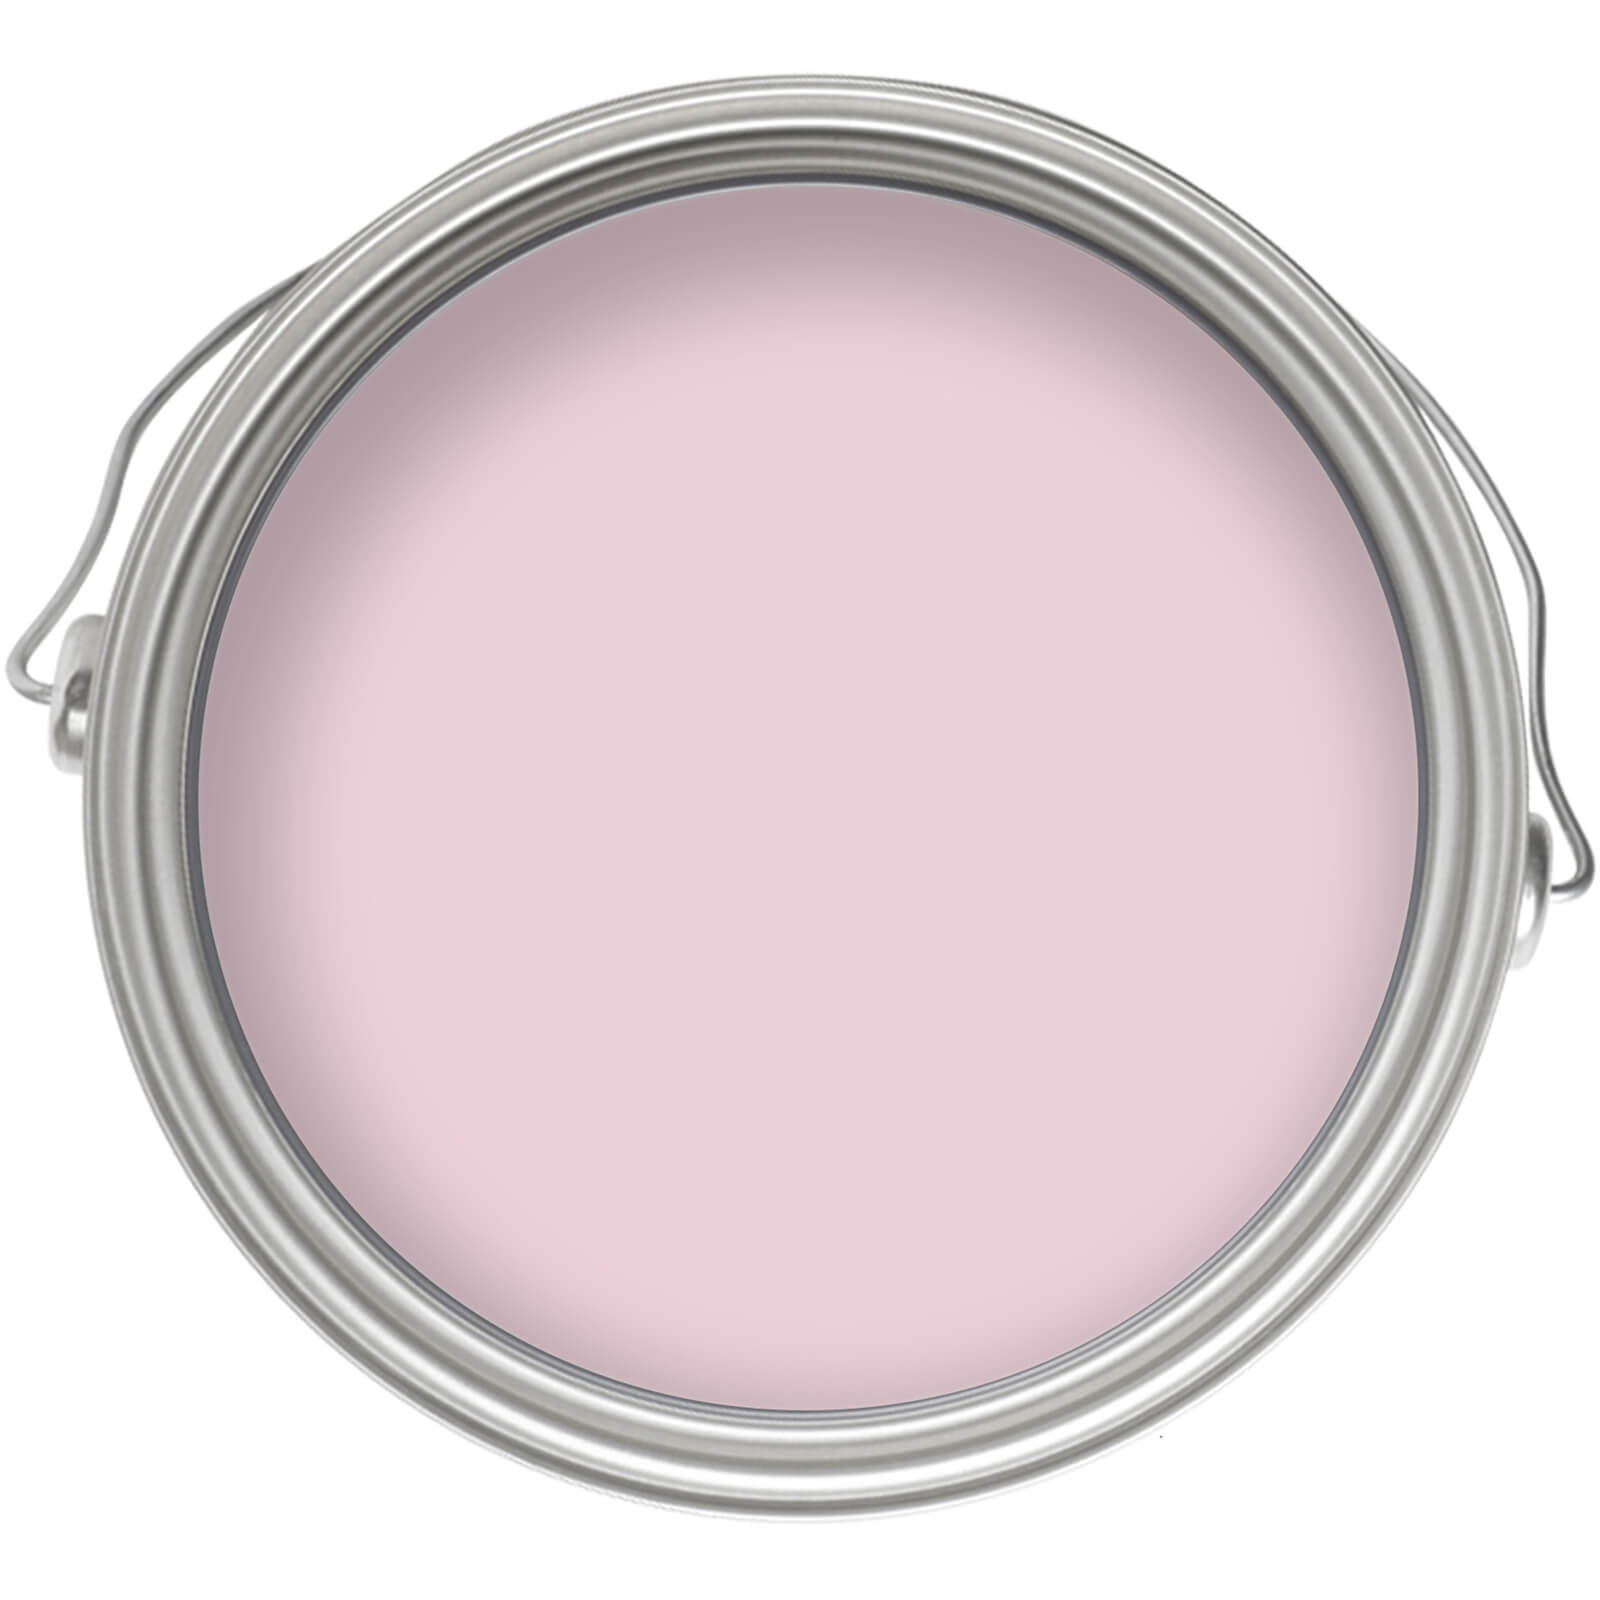 Homebase Matt Emulsion Paint Angel Pink - 5L